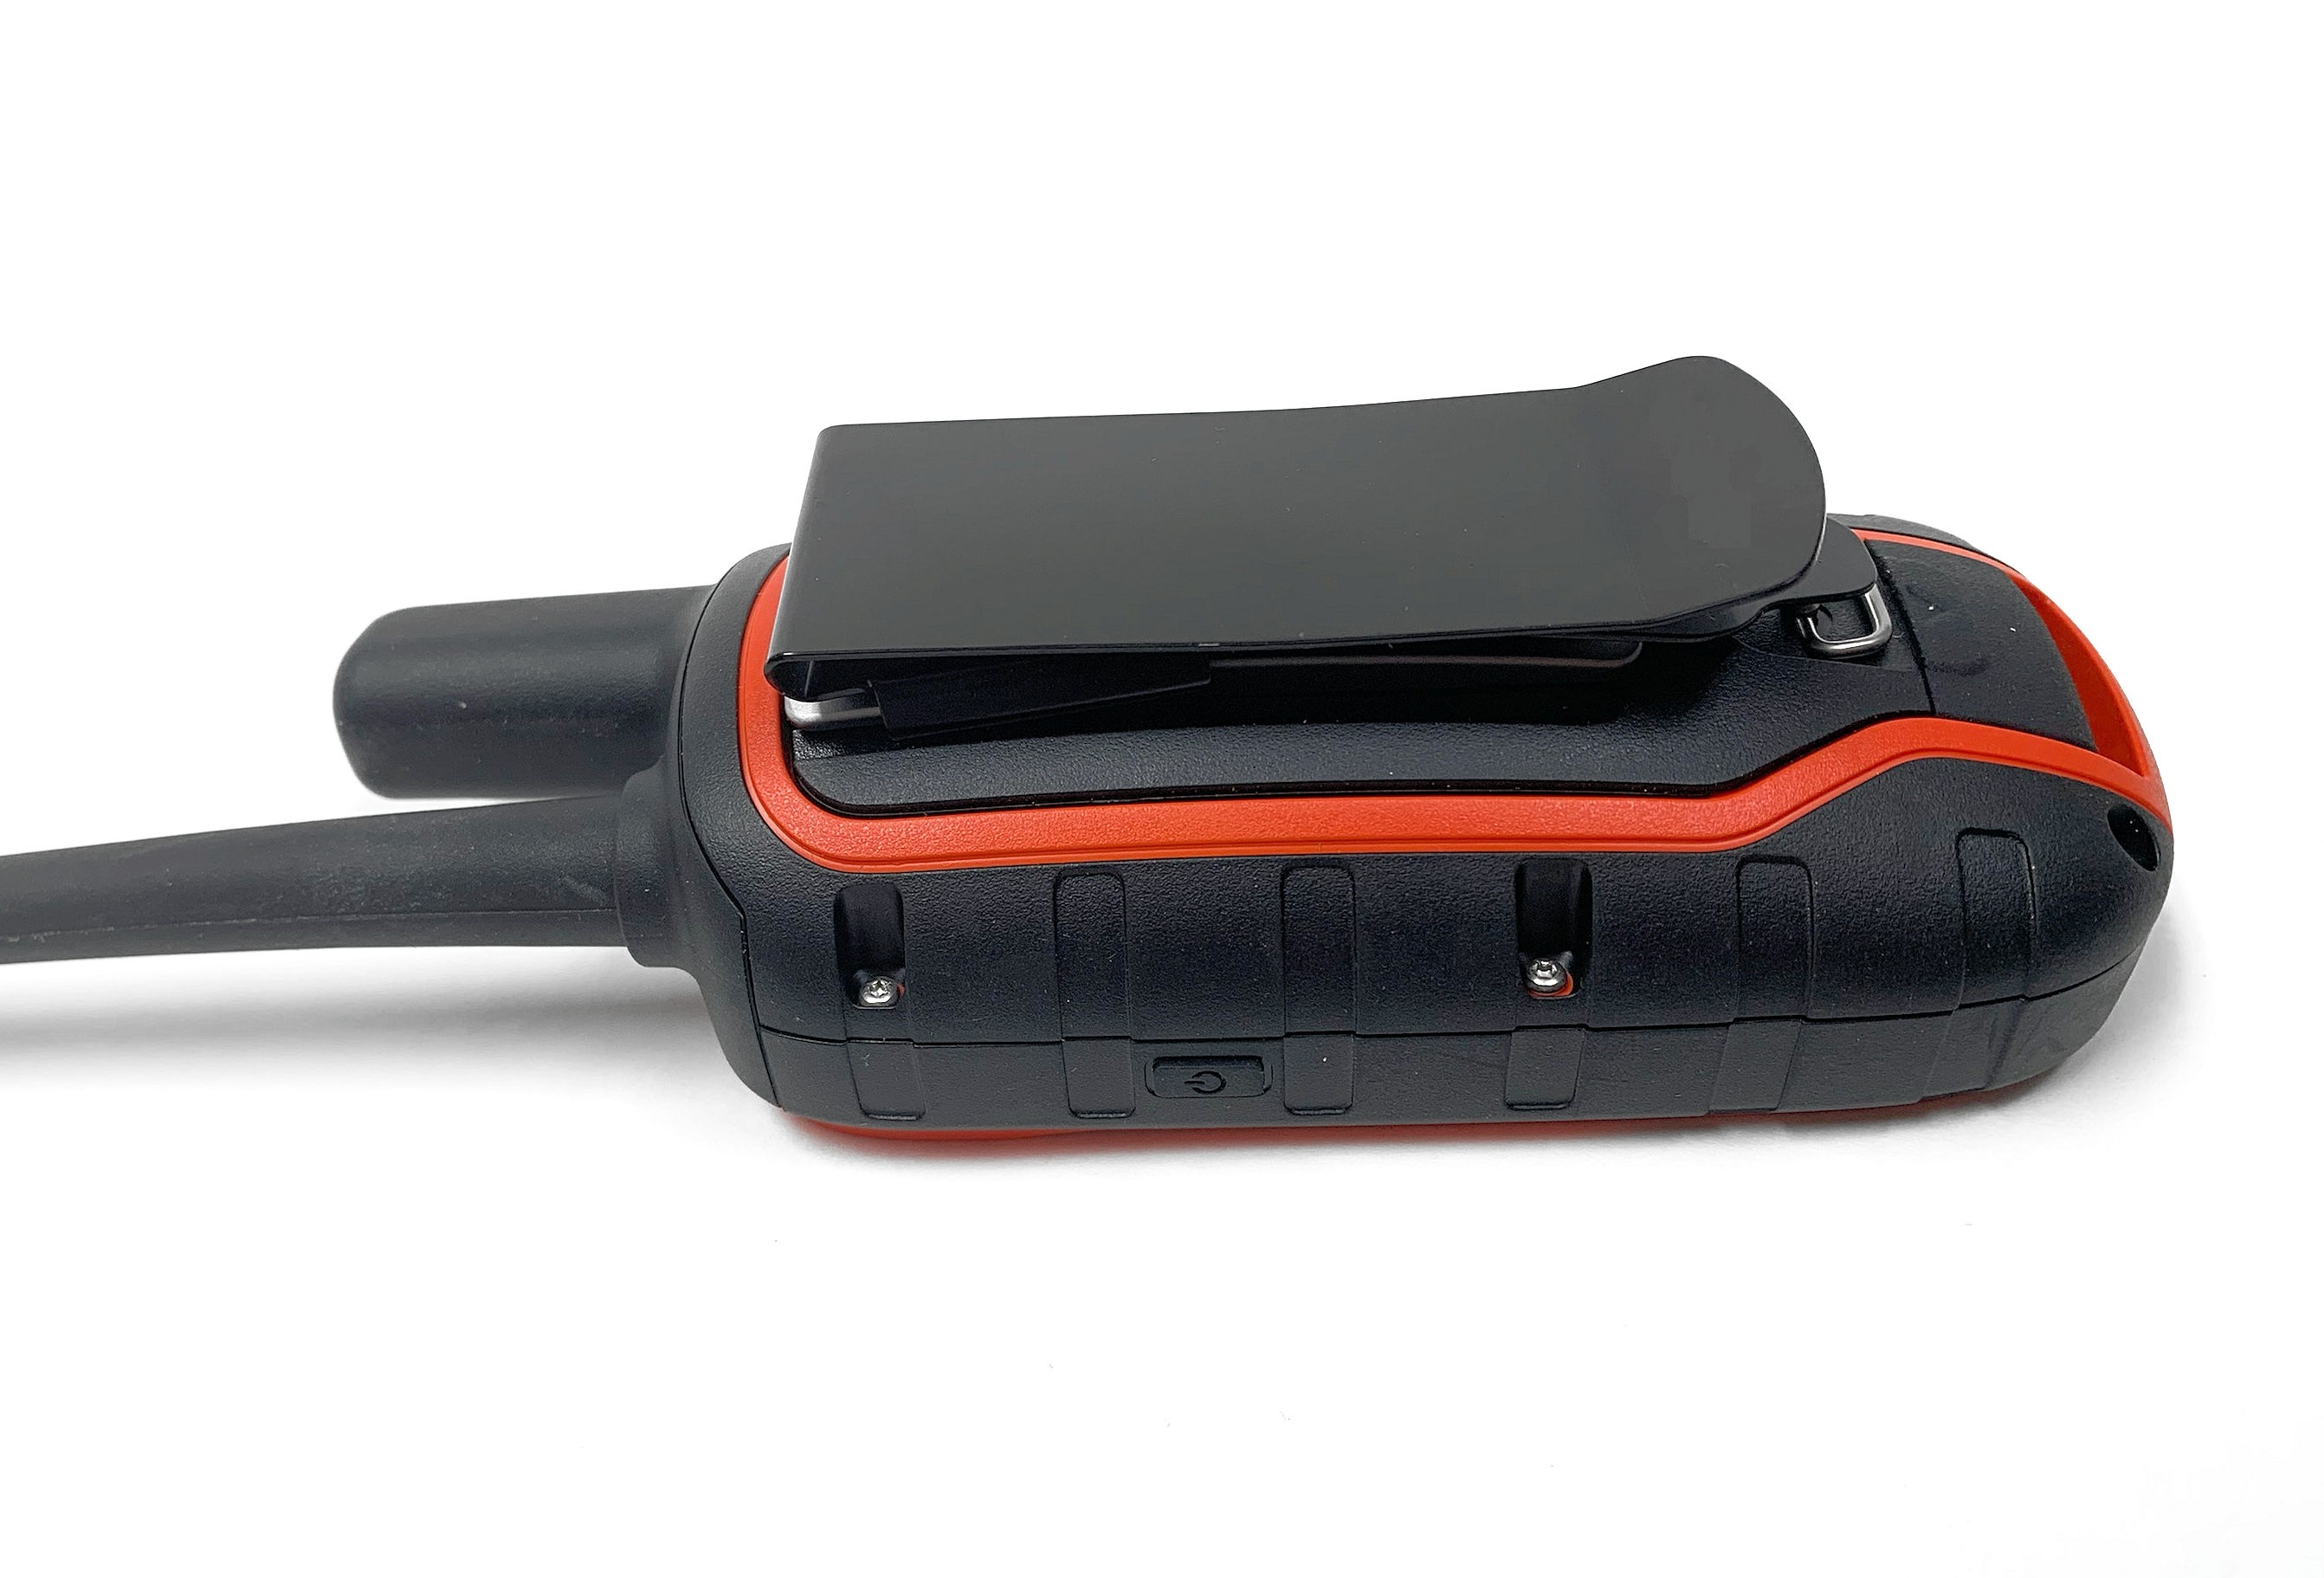 Klipzer connector for Garmin Handheld